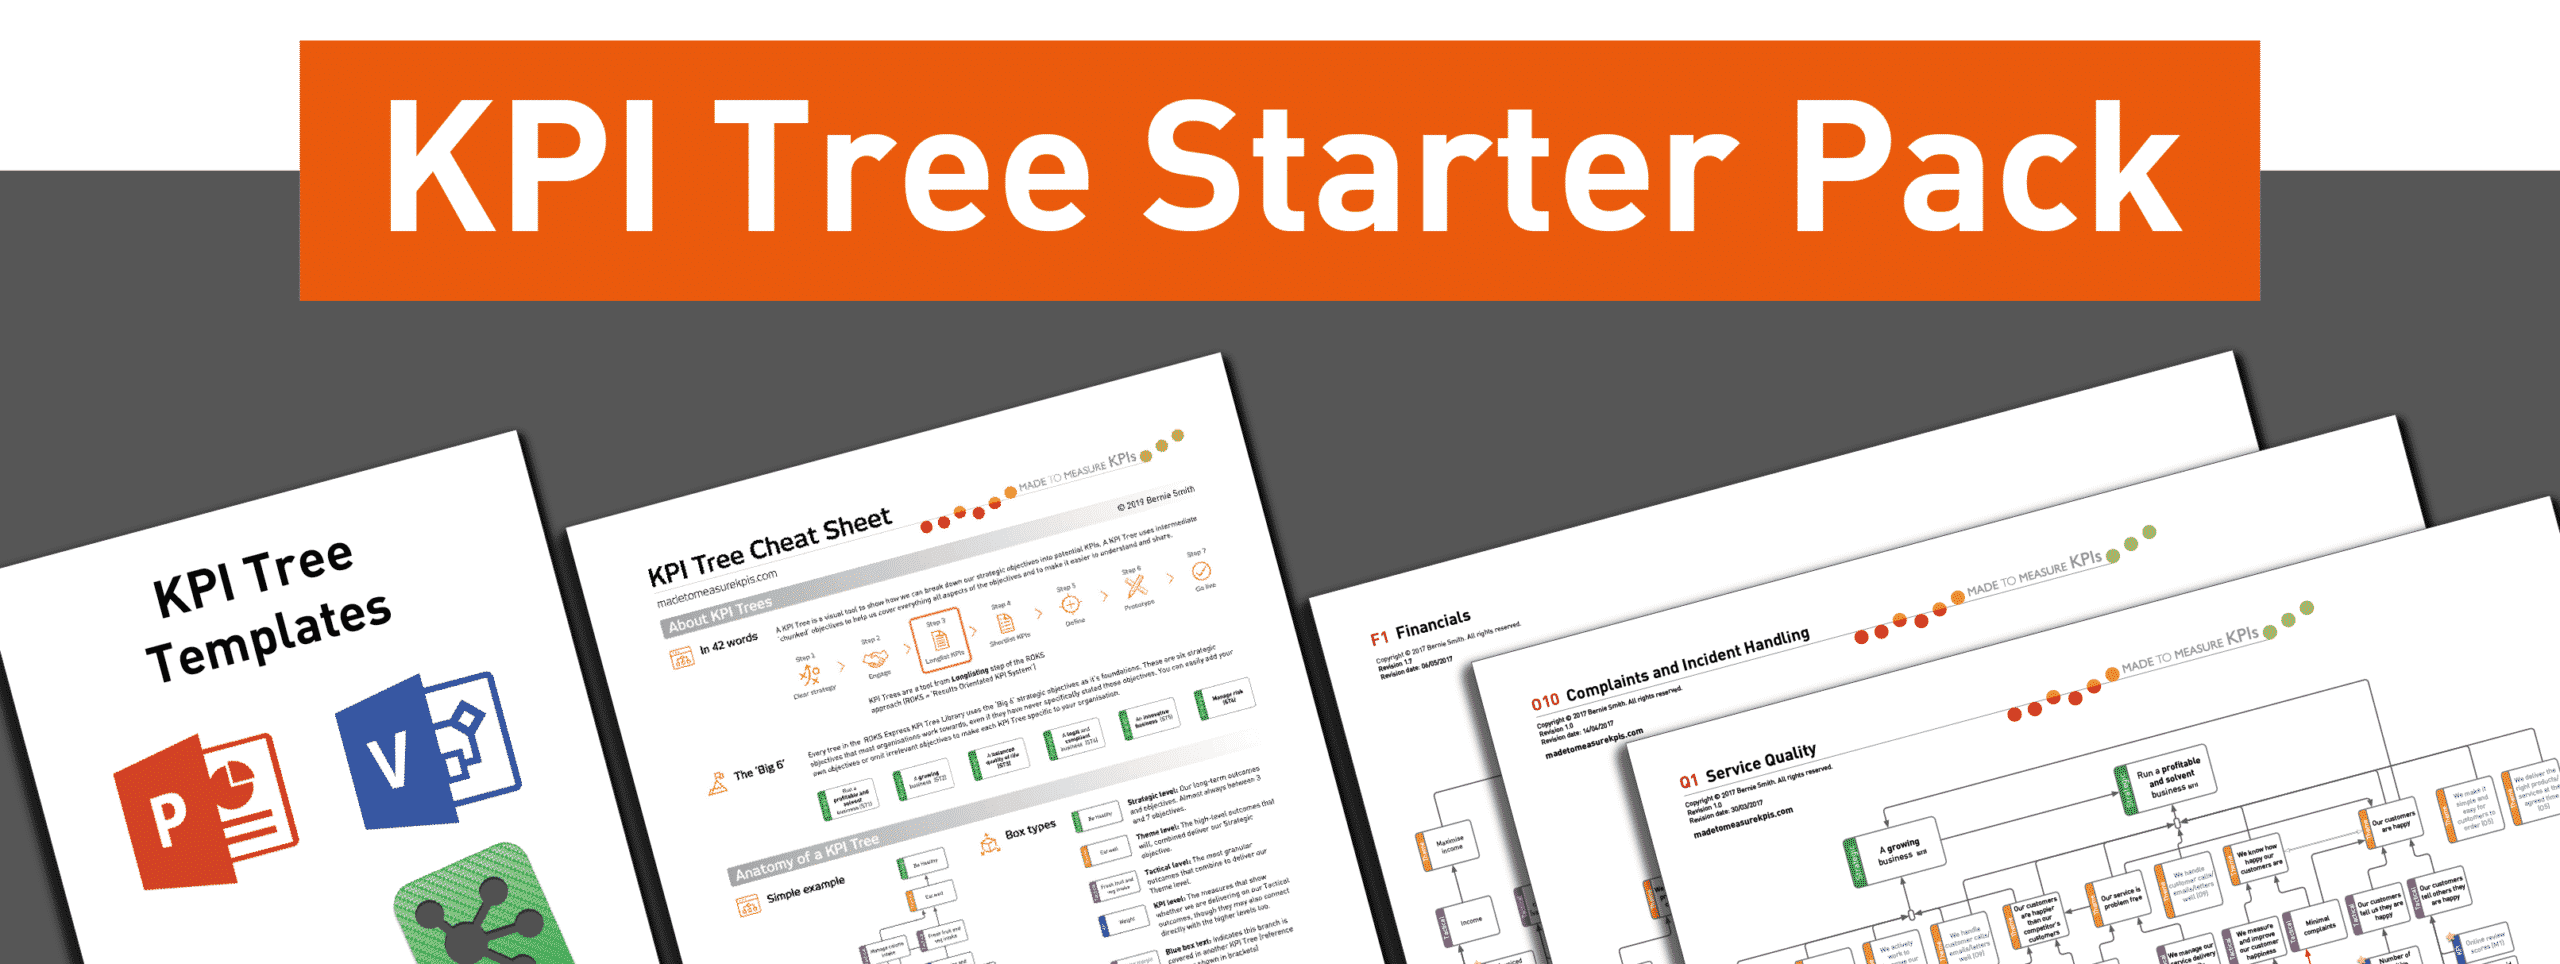 KPI Tree Starter Pack